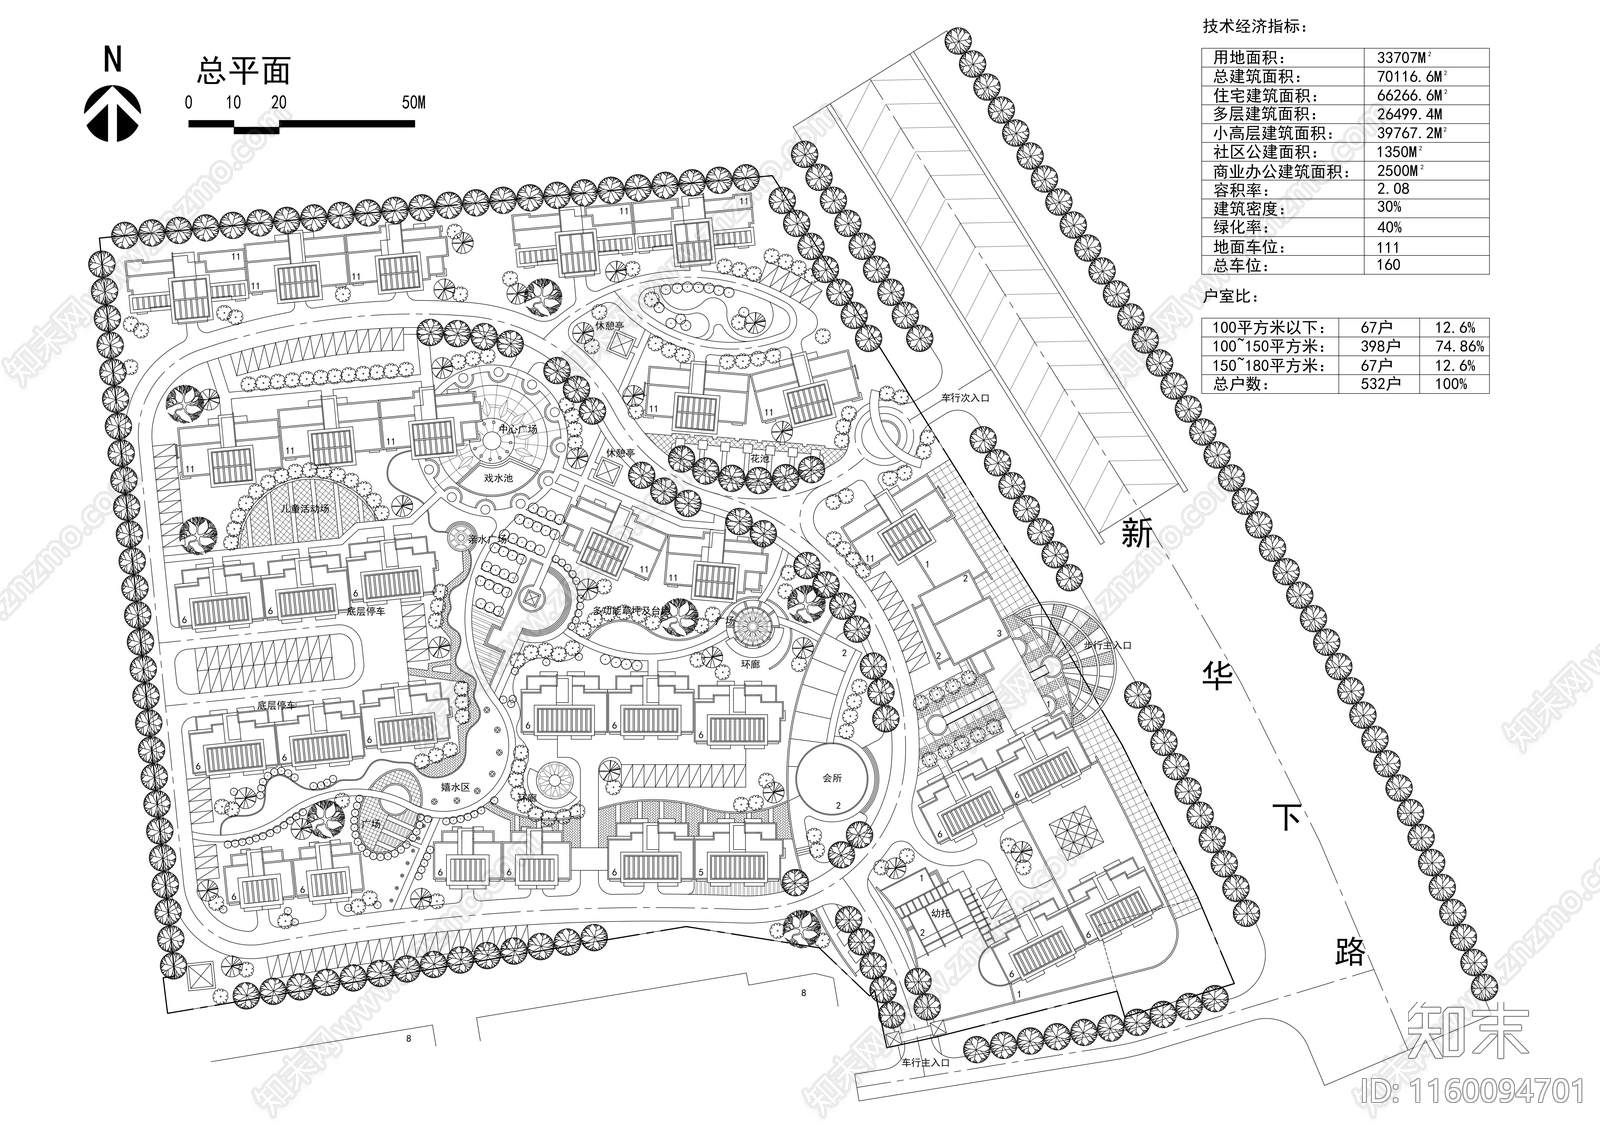 居住小区规划设计方案施工图下载【ID:1160094701】